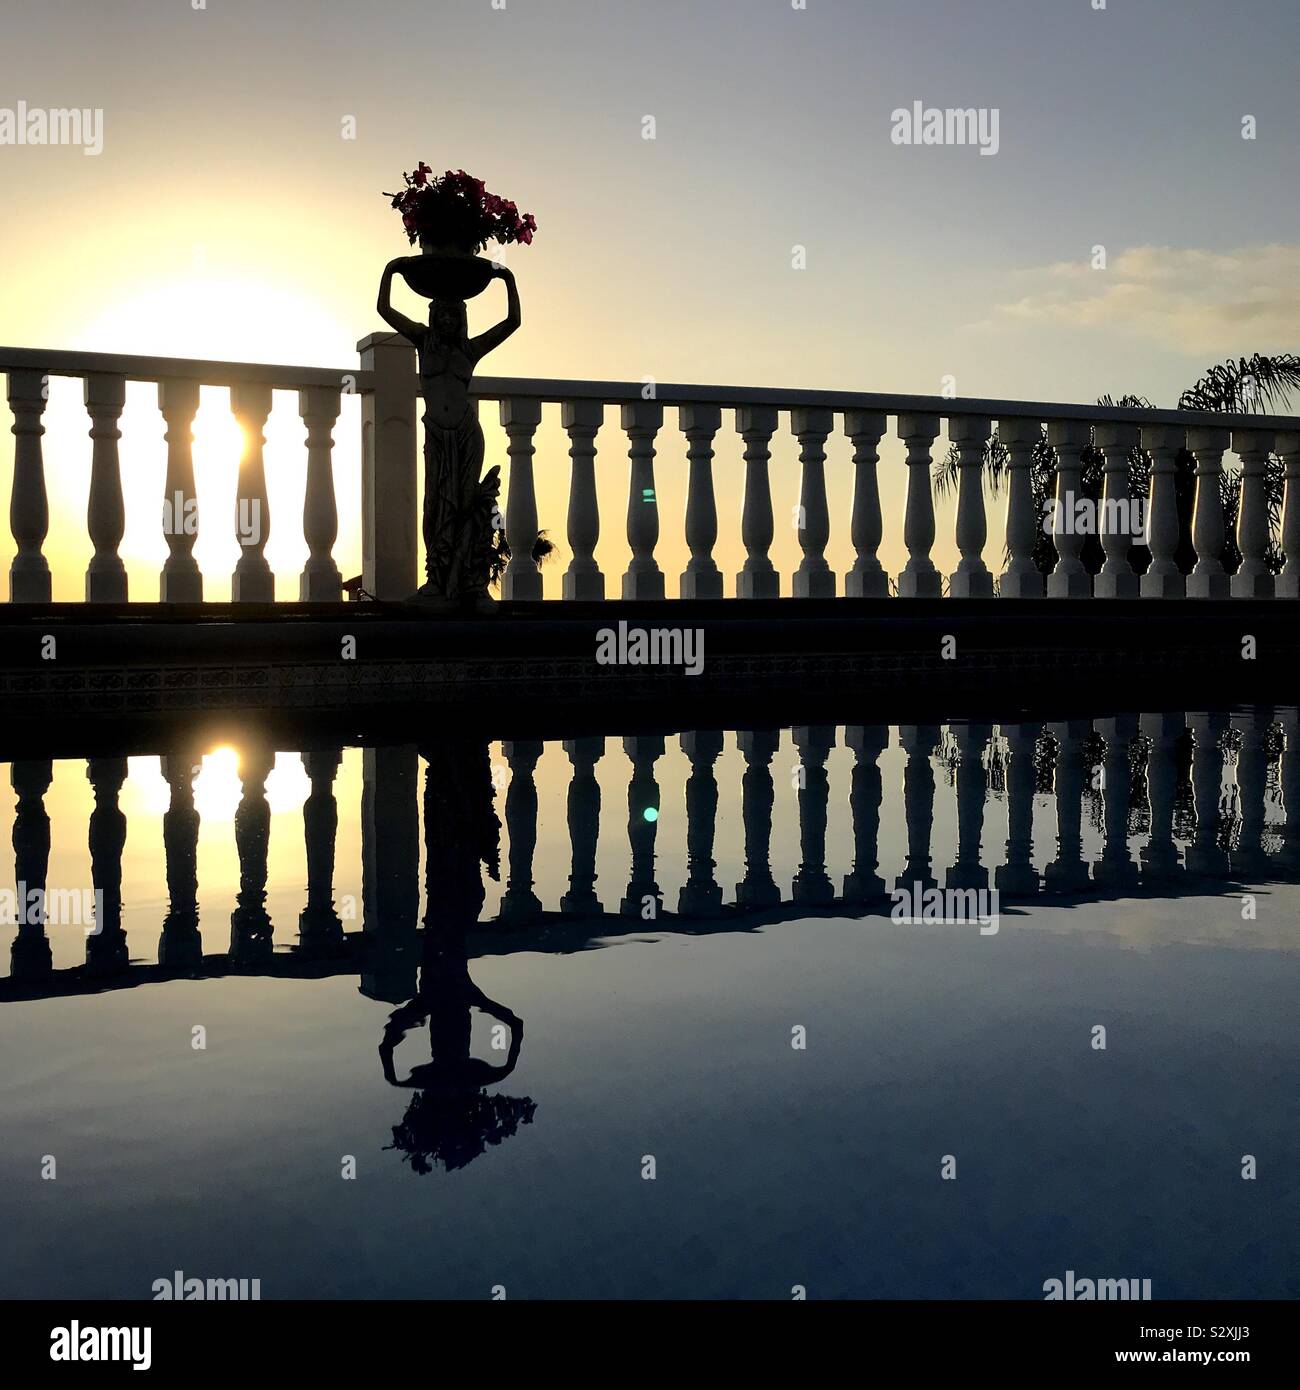 Symmetrische Reflexion von balustraden und Statue in Wasser bei Sonnenuntergang Stockfoto